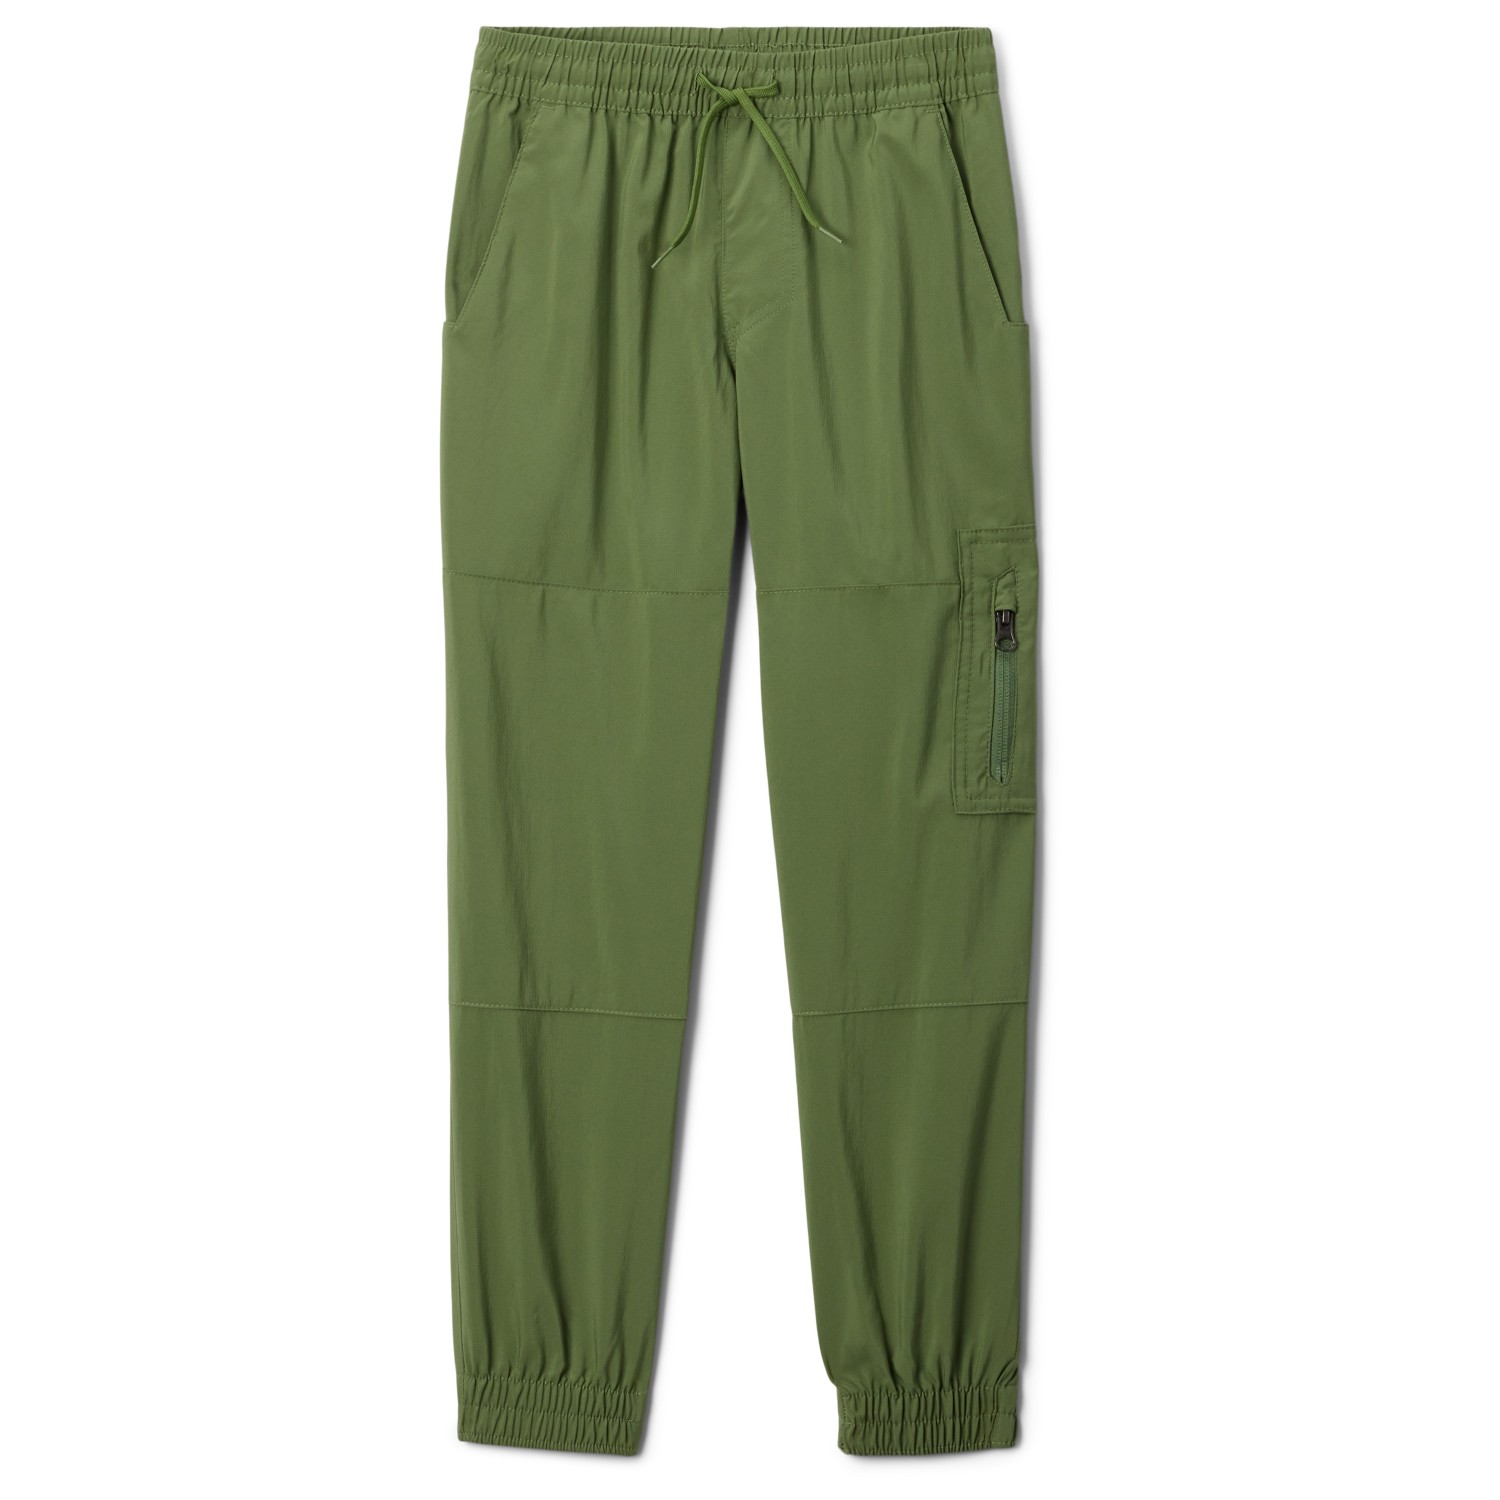 Трекинговые брюки Columbia Kid's Silver Ridge Utility Cargo Pant, цвет Canteen брюки карго nike air jordan utility pant песочный